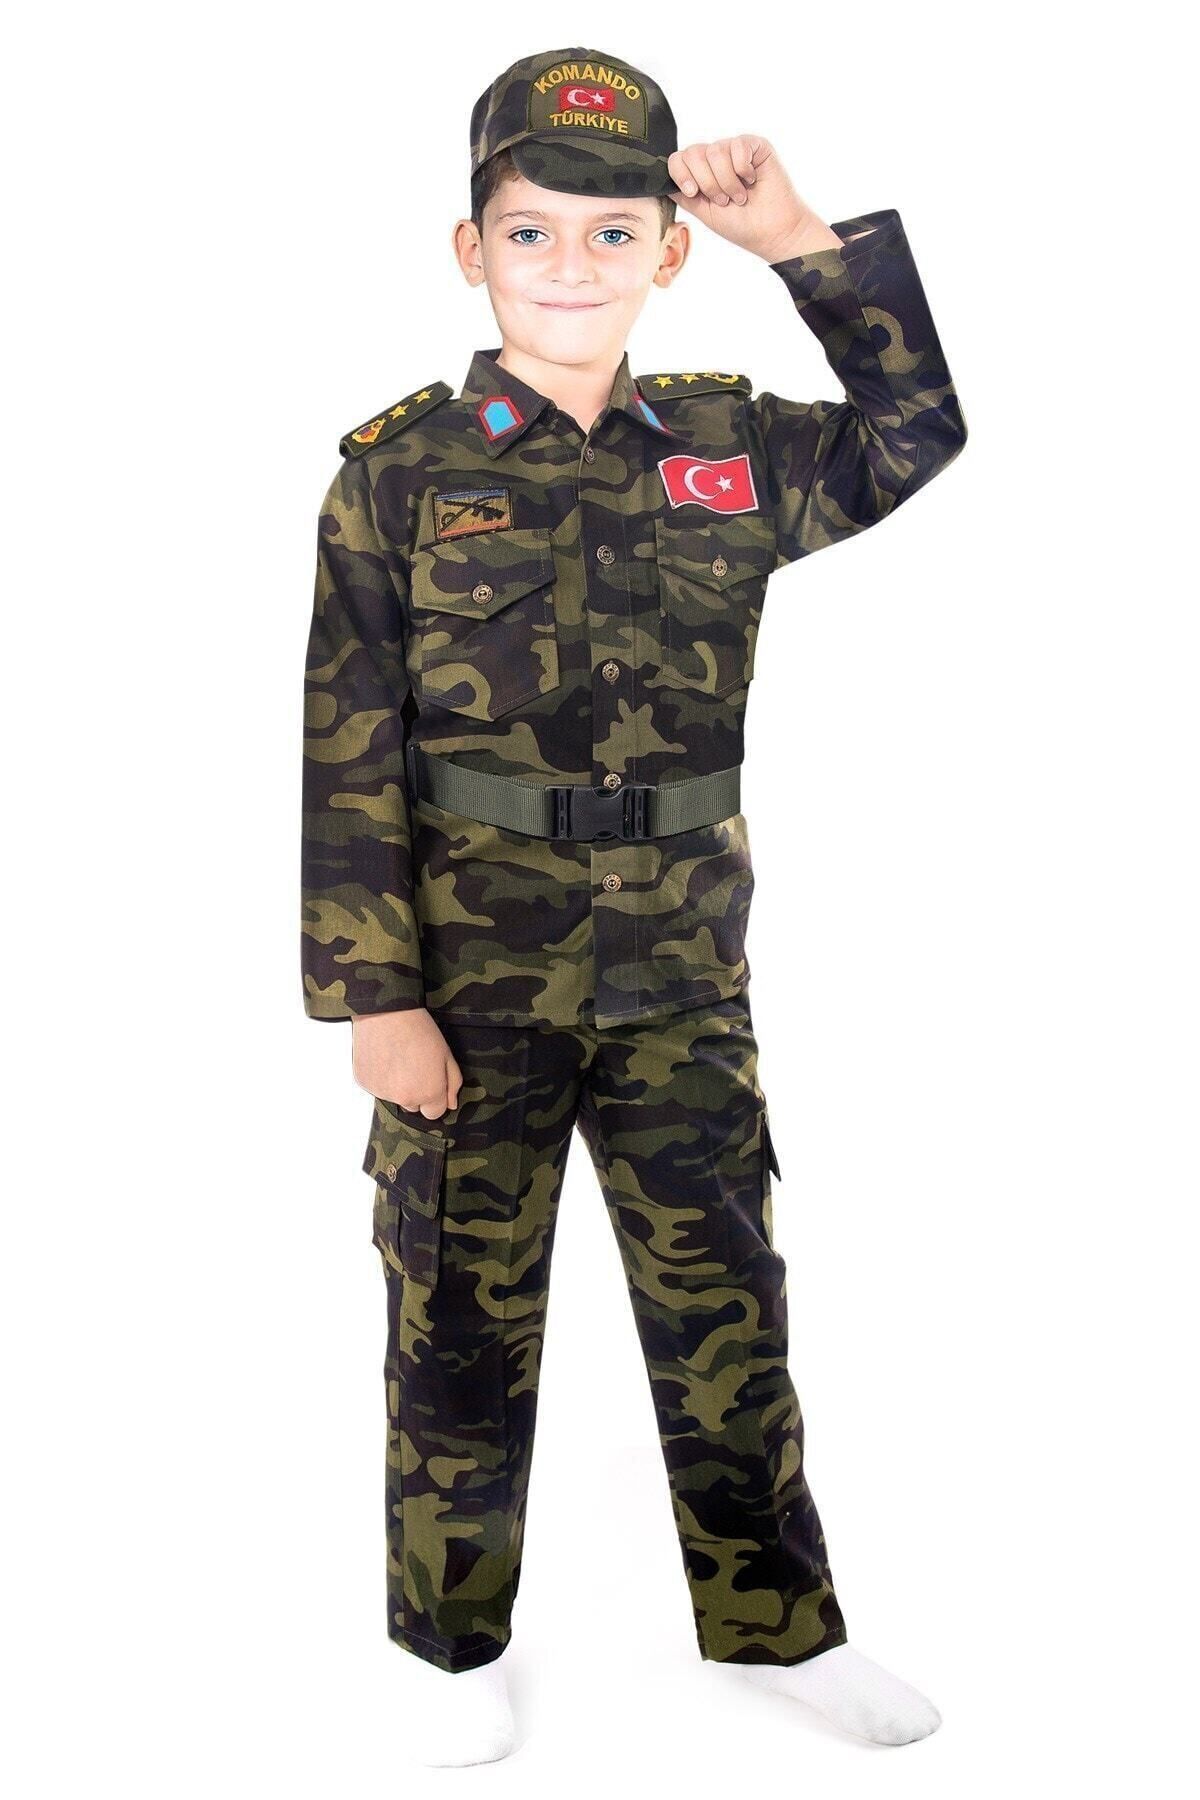 Liyavera Erkek Çocuk Haki Türk Askeri Kostümü Çocuk Kıyafeti